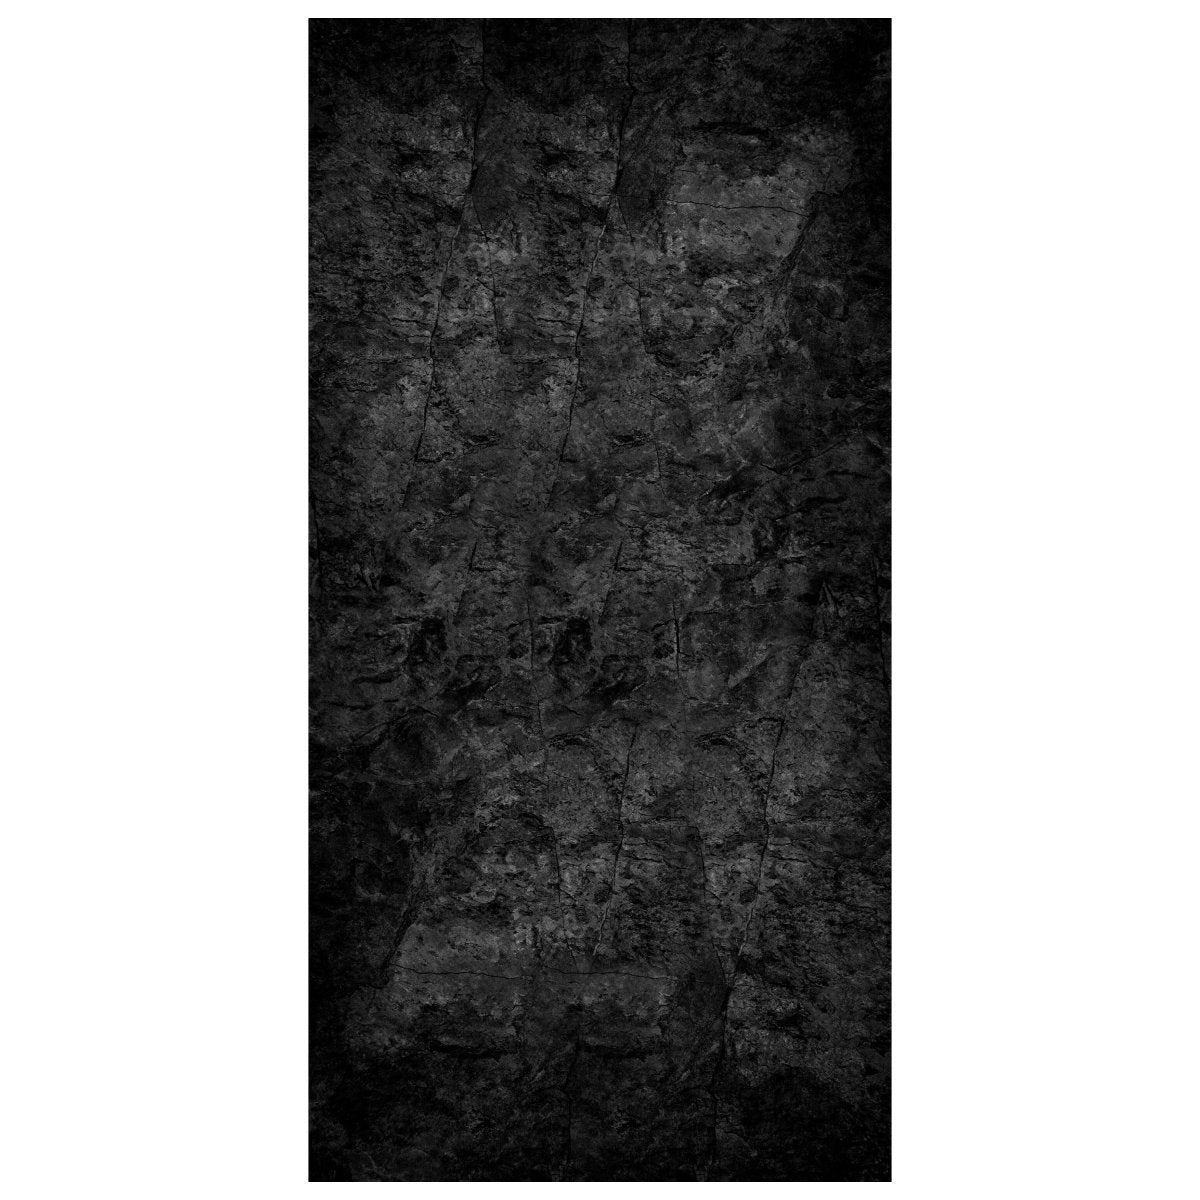 Türtapete schwarze Steinmauer, Risse, dunkel M1183 - Bild 2